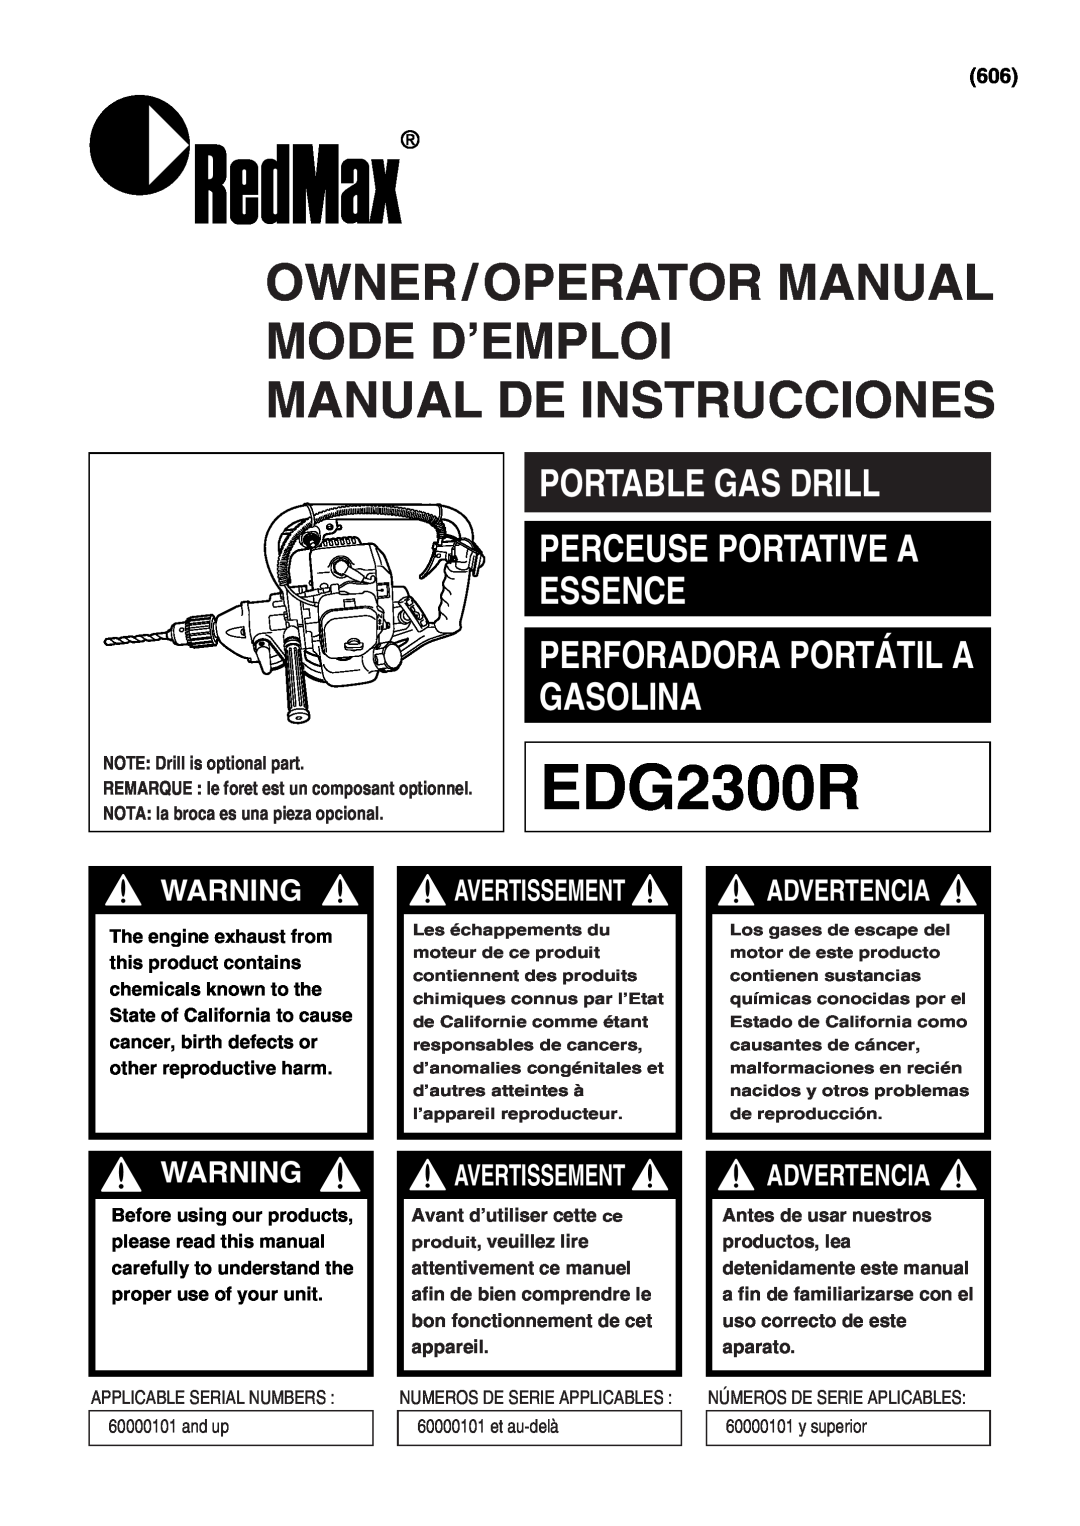 RedMax EDG2300R manual Advertencia, NOTE Drill is optional part, REMARQUE le foret est un composant optionnel 